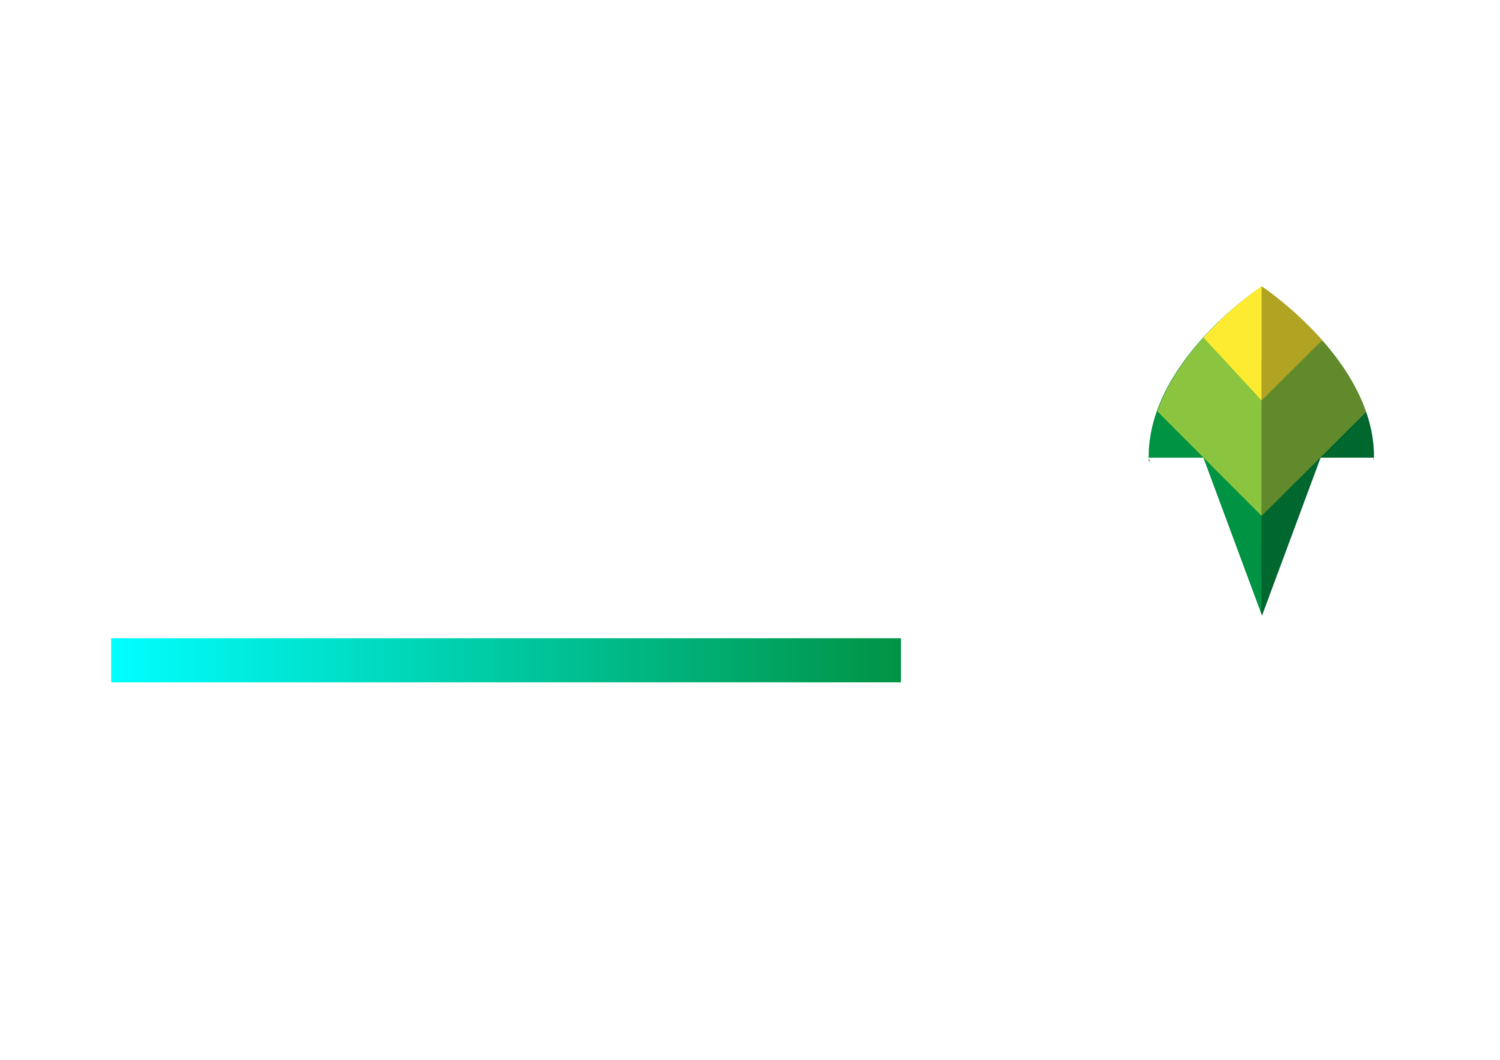 Evolve EV